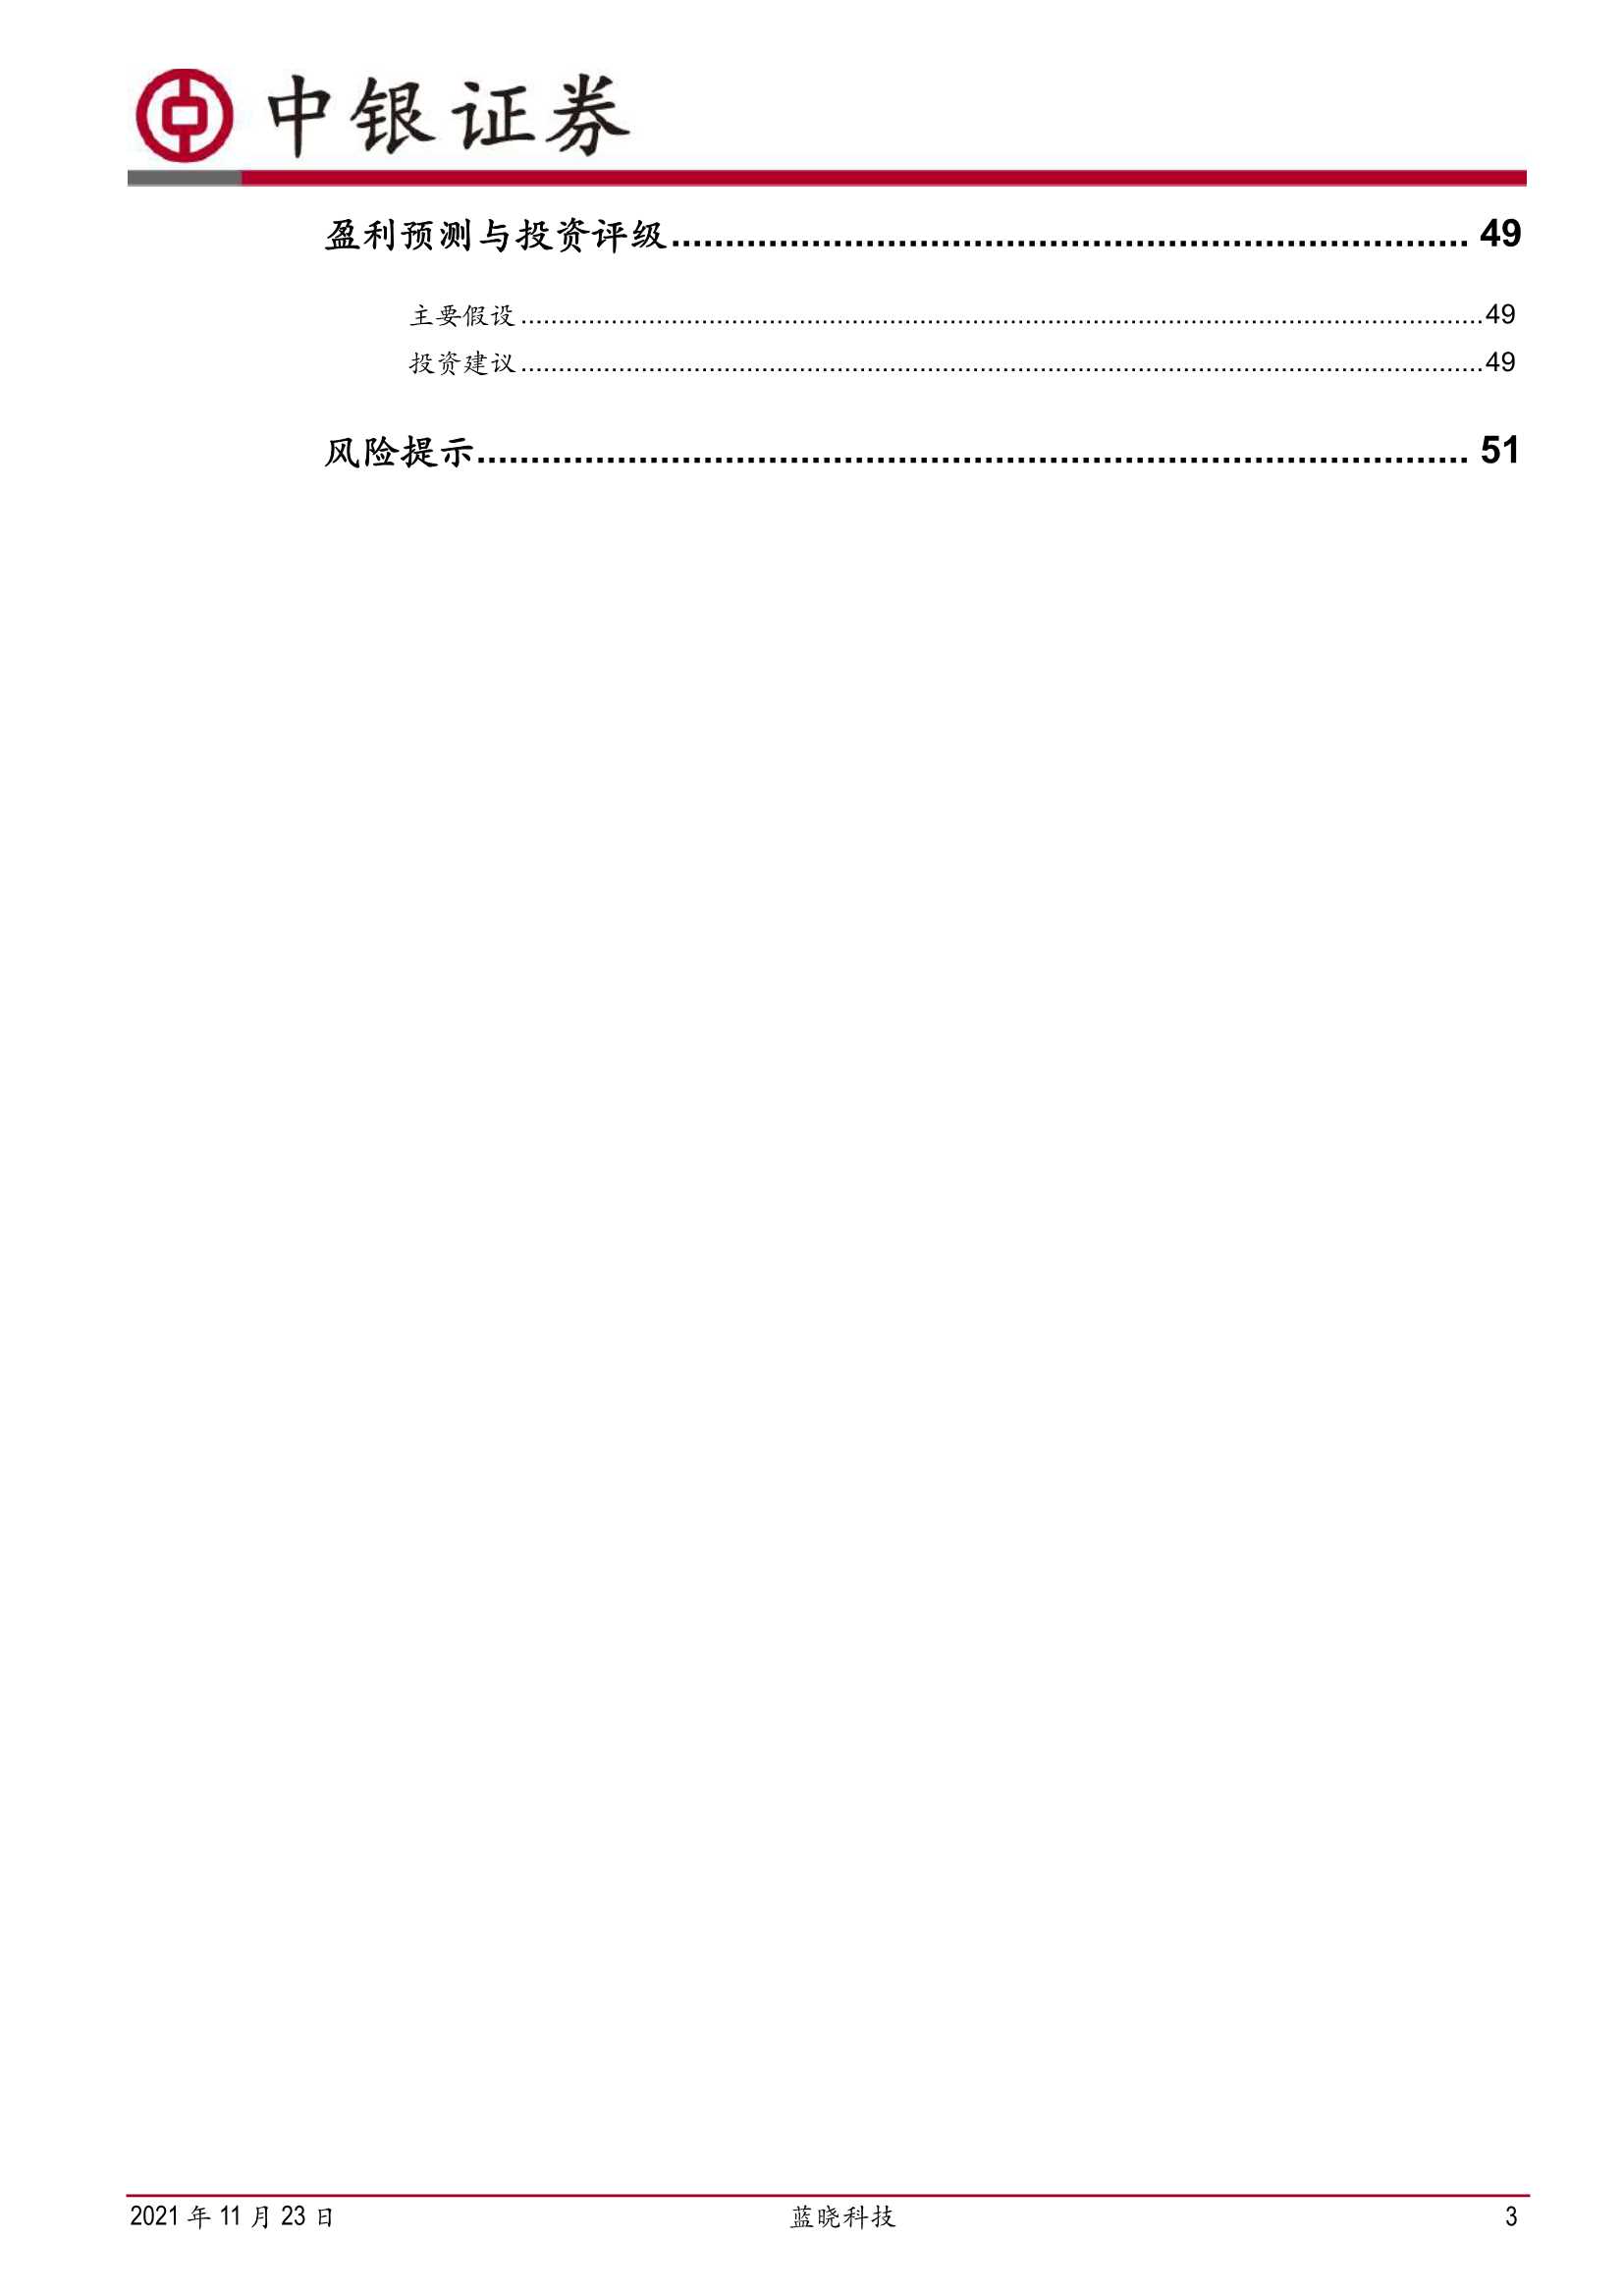 中银国际-蓝晓科技-300487-专精吸附分离材料，特种领域创新先行者-20211123-54页